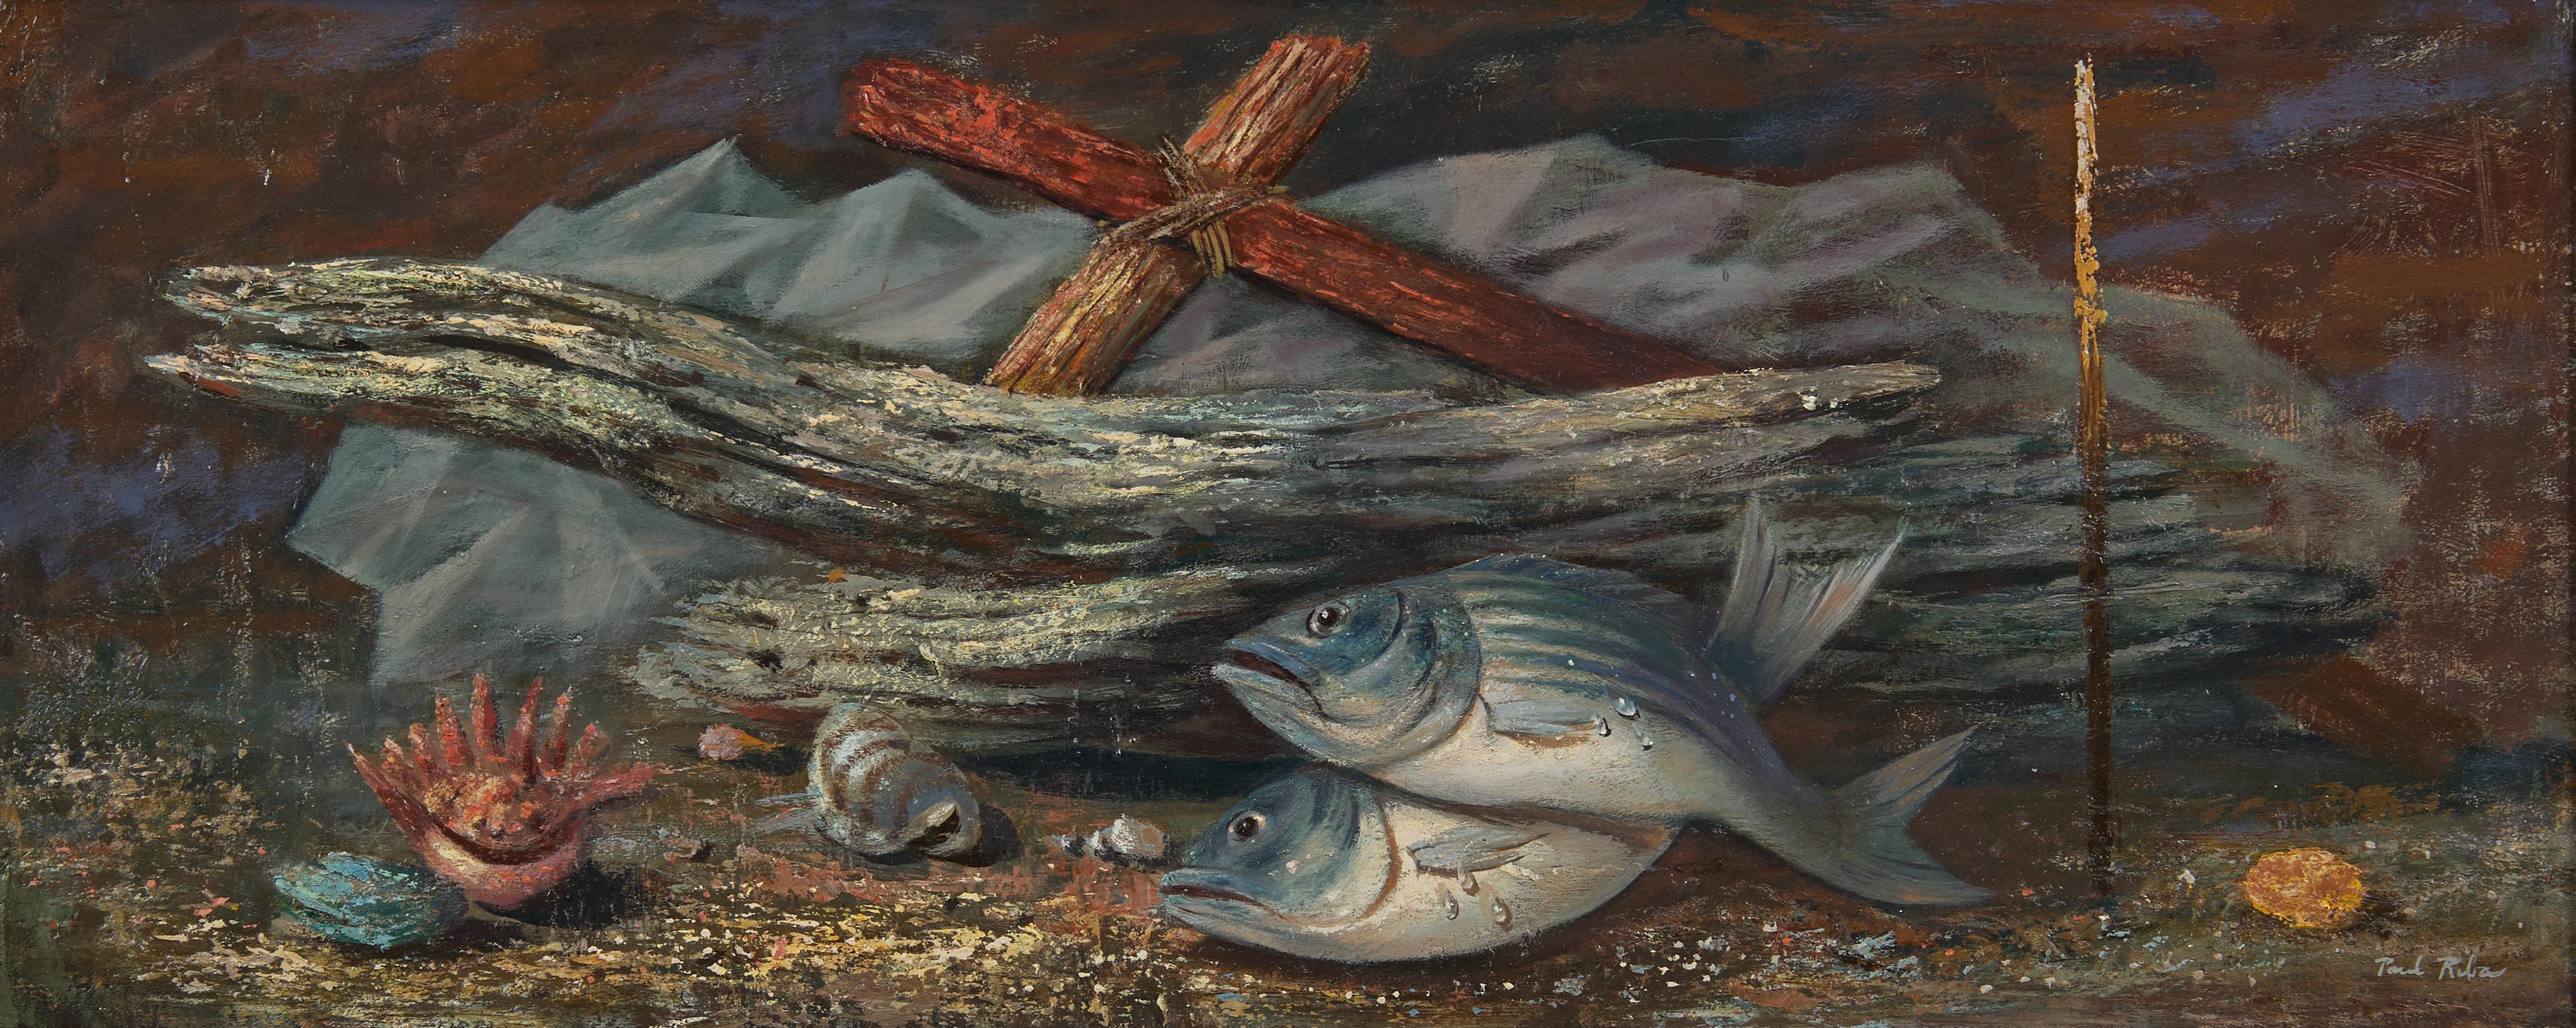 Paul Riba Figurative Painting – Driftwood & Fish, Magischer Realismus, Surrealistischer Künstler aus Cleveland, Mitte des 20. Jahrhunderts